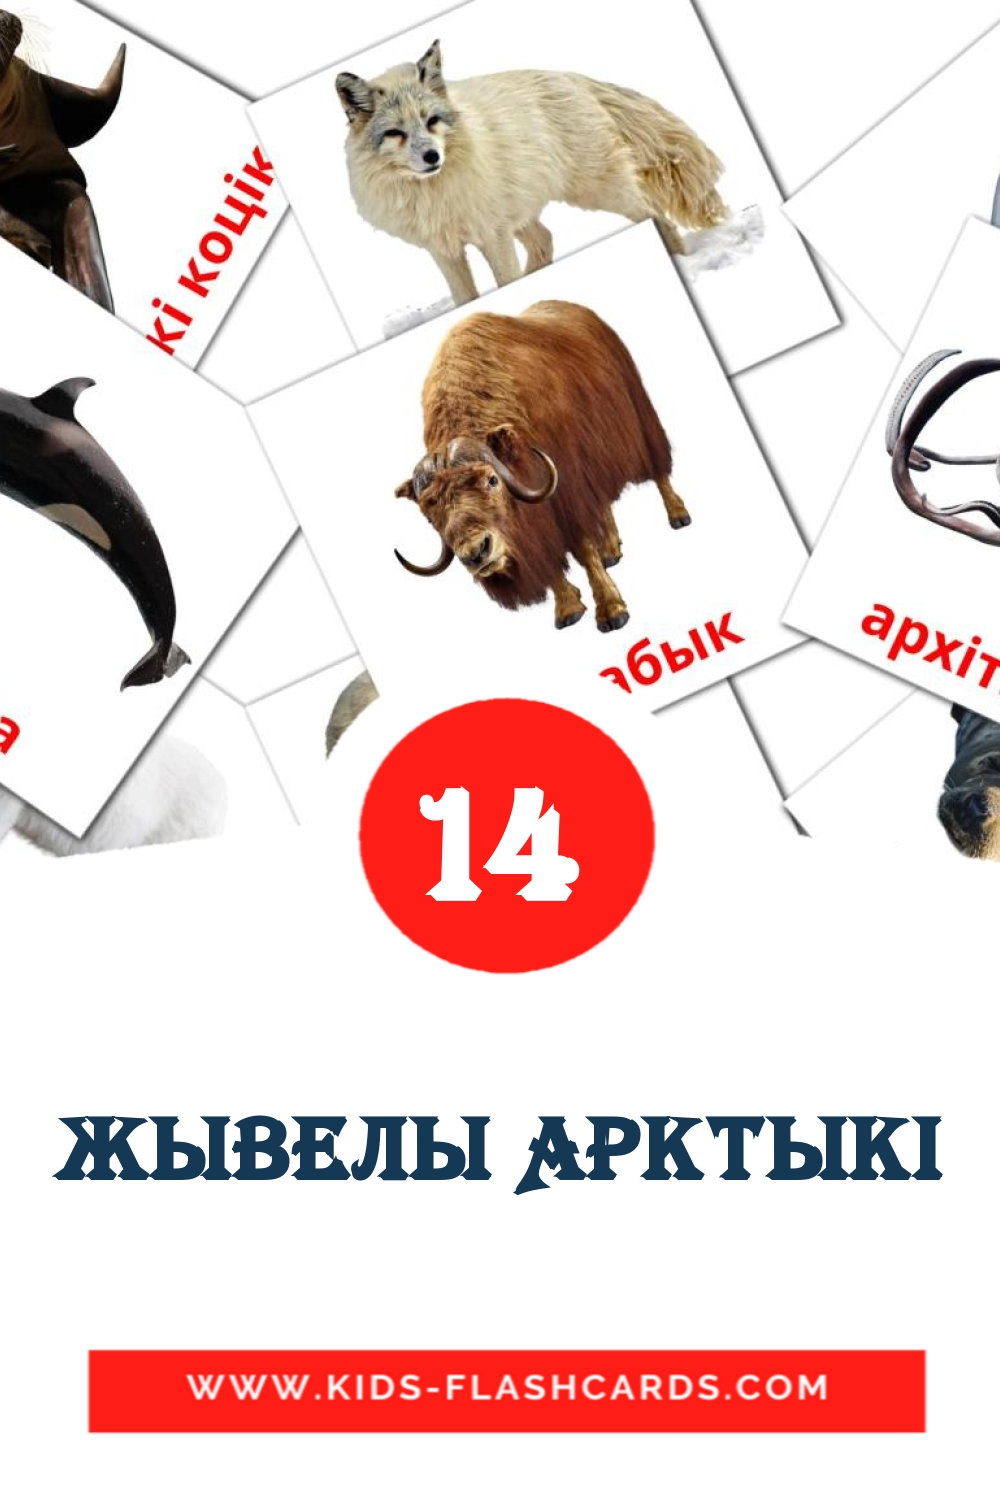 14 Cartões com Imagens de Жывелы Арктыкi para Jardim de Infância em bielorrusso